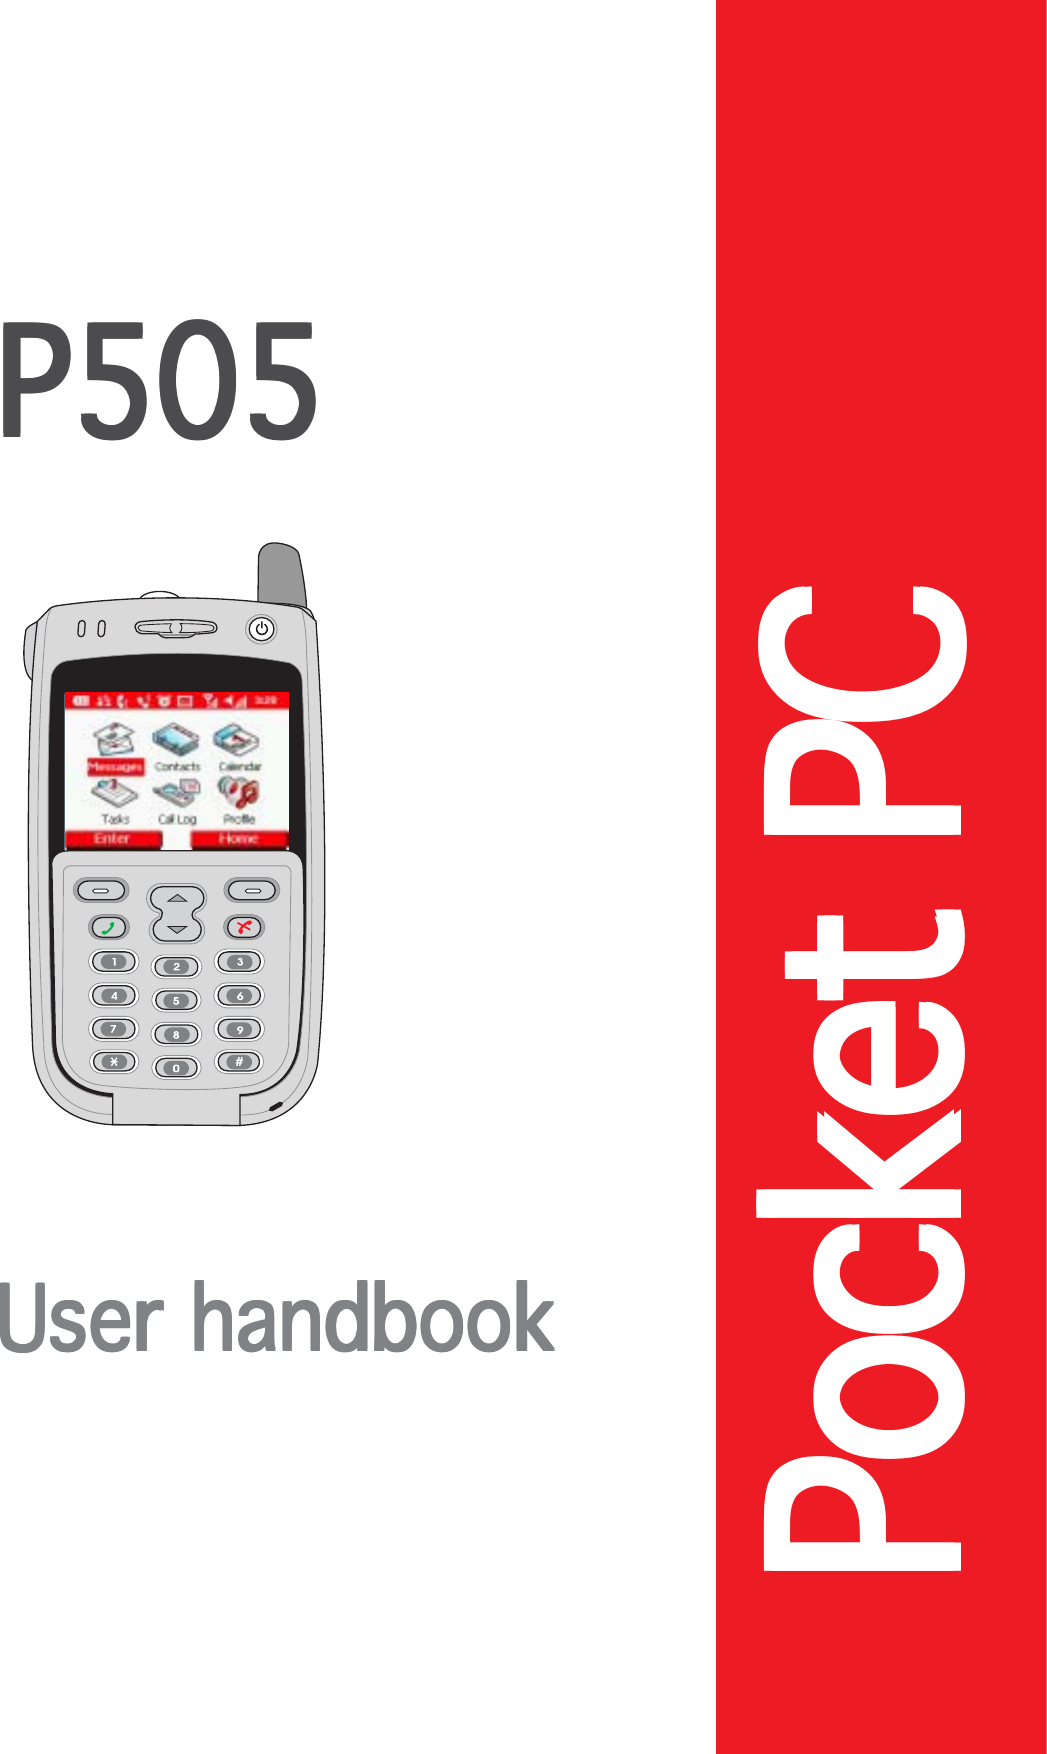 Pocket PCPocket PCPocket PCPocket PCPocket PCP505P505P505P505P505User handbookUser handbookUser handbookUser handbookUser handbook